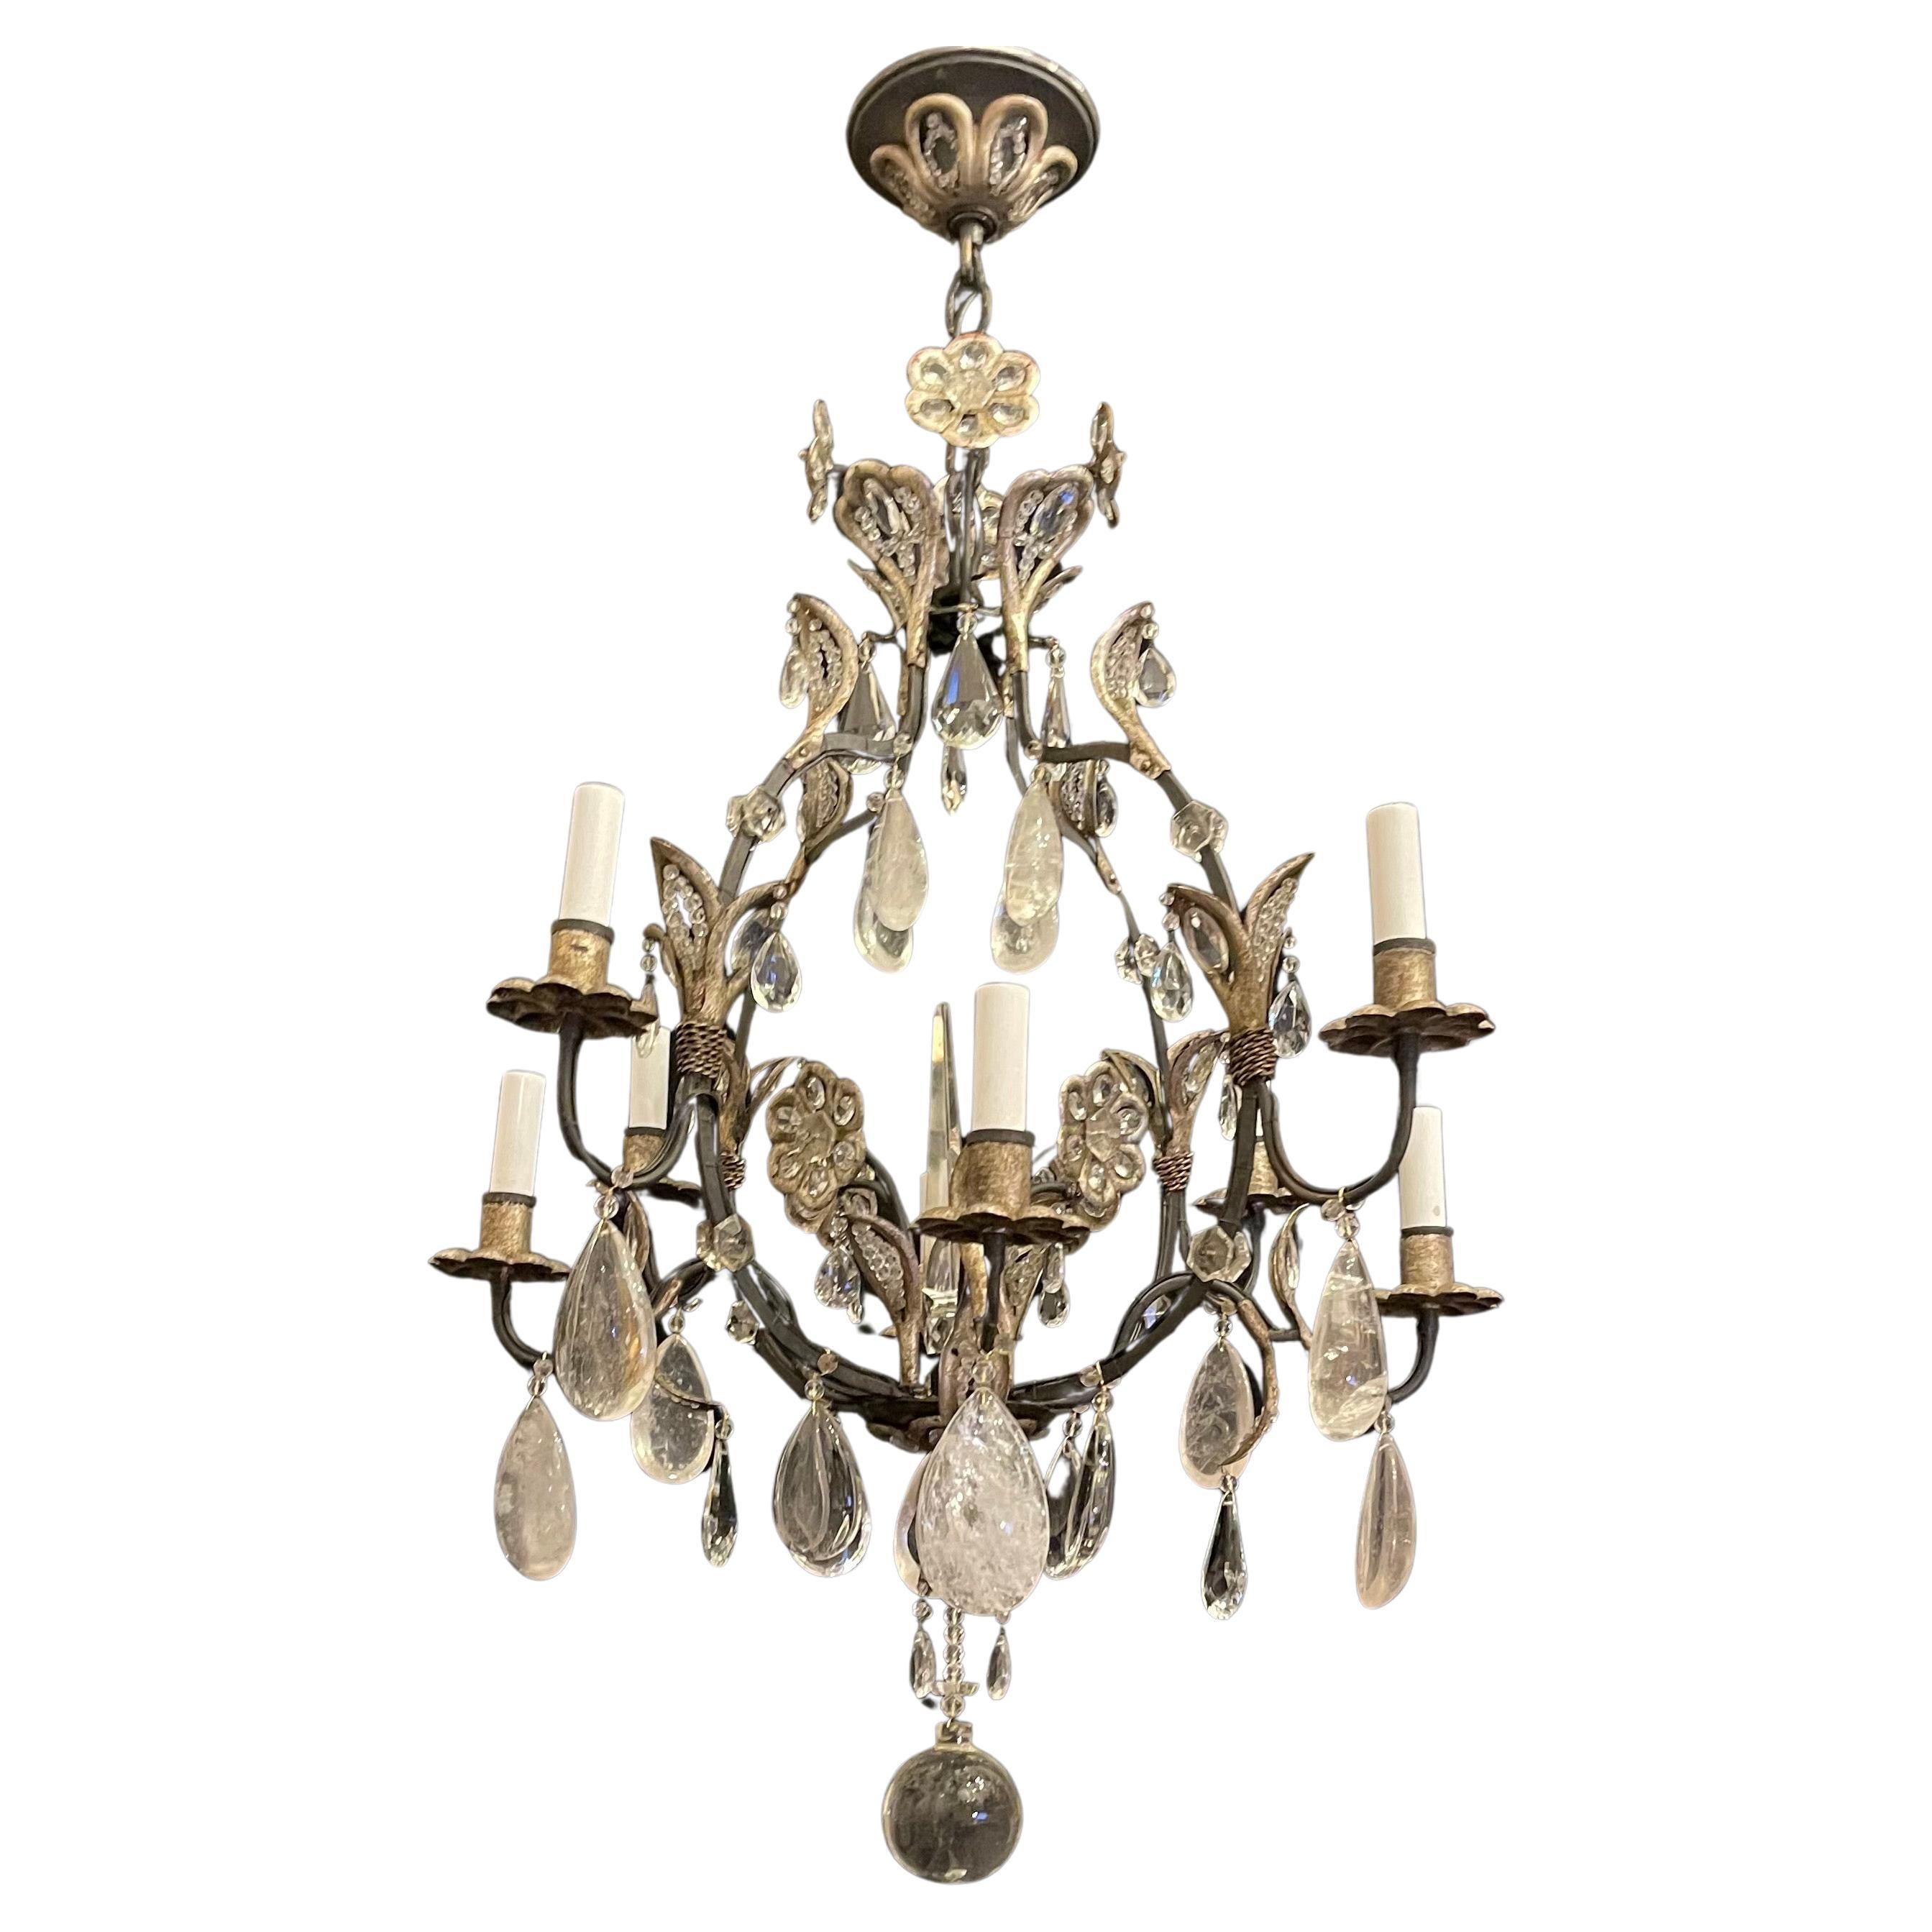 Eine wunderbare 8 Kandelaber Licht in der Art von Maison Baguès Stil Eisen & Silber vergoldet mit Bergkristall und Kristall Tropfen Kronleuchter mit Blumenstrauß Akzente im ganzen.